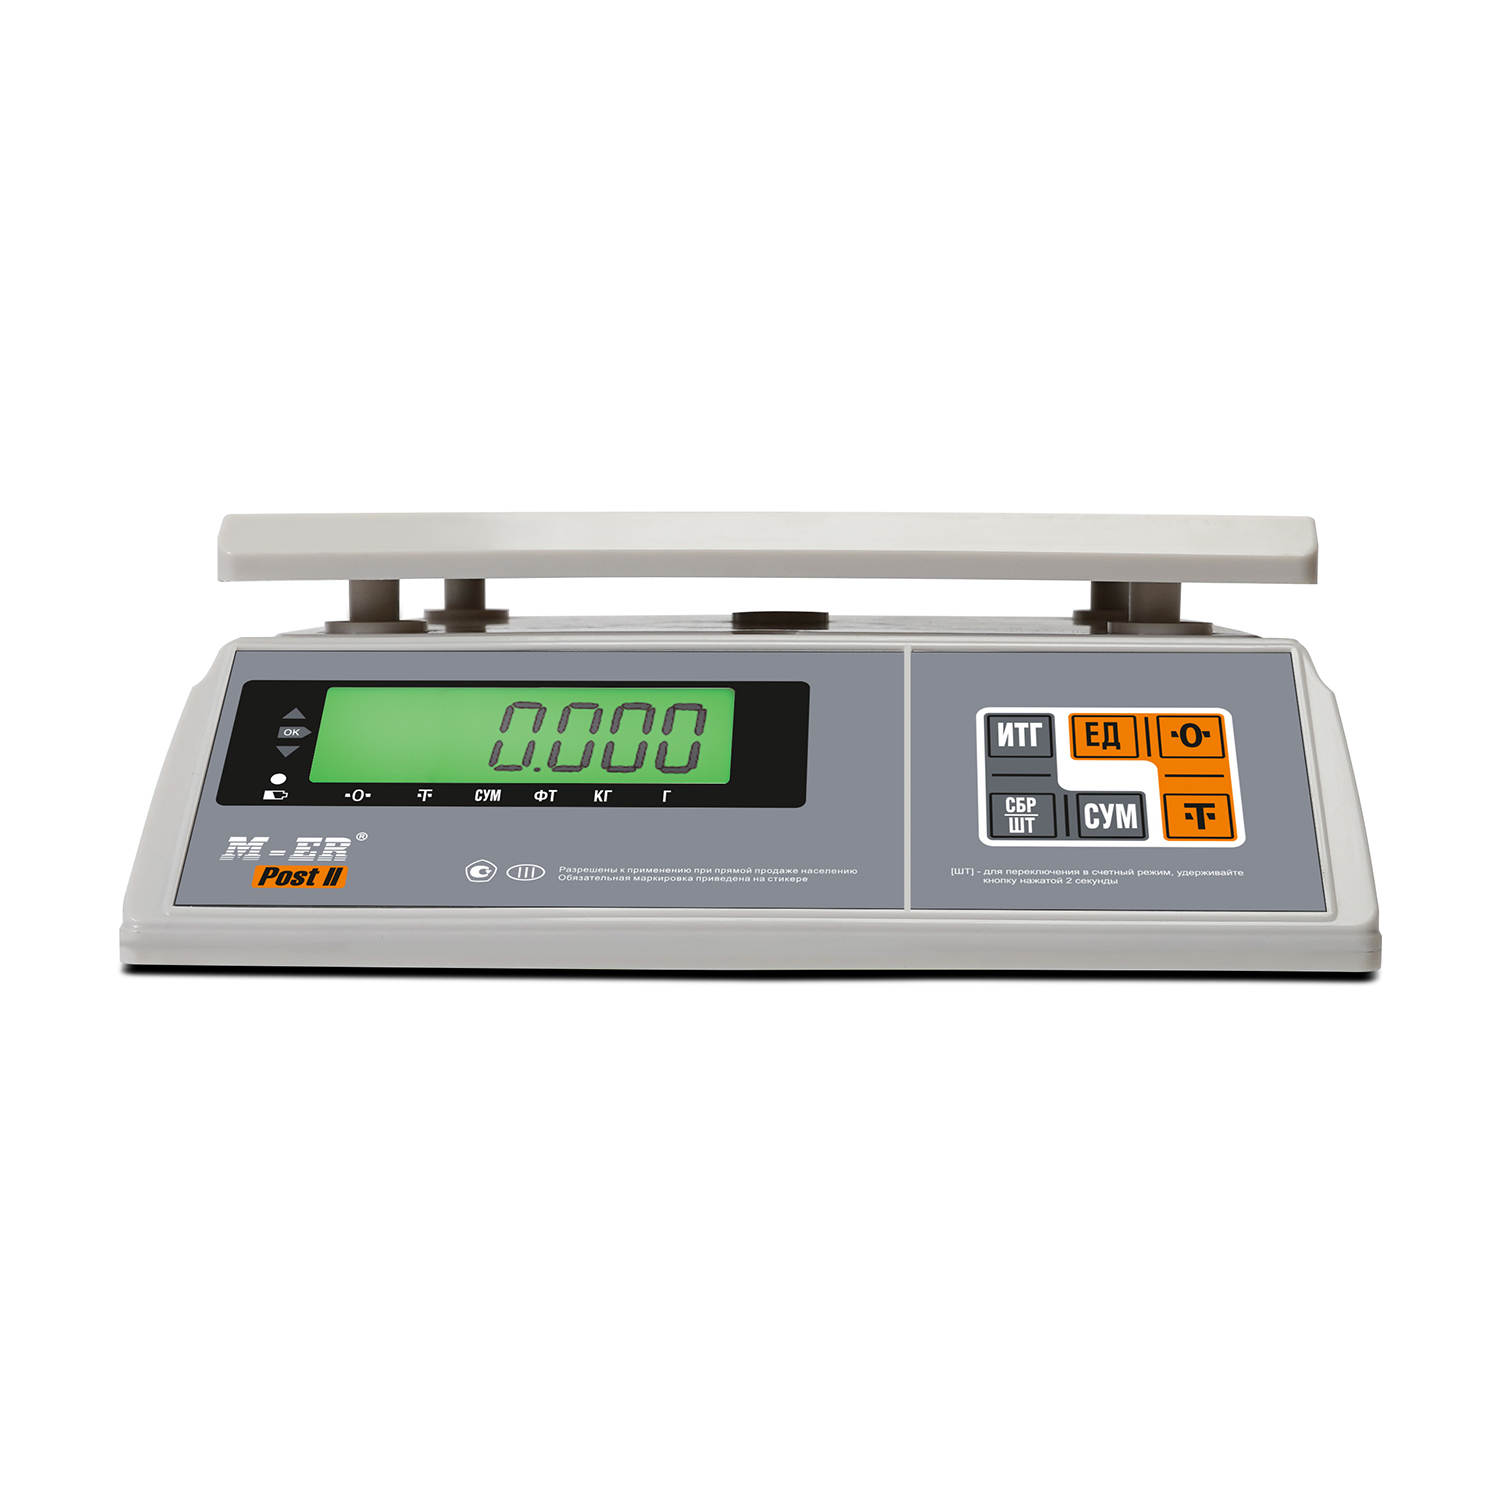 Порционные весы M-ER 326 AFU-32.1 "Post II" LCD USB-COM (3107)